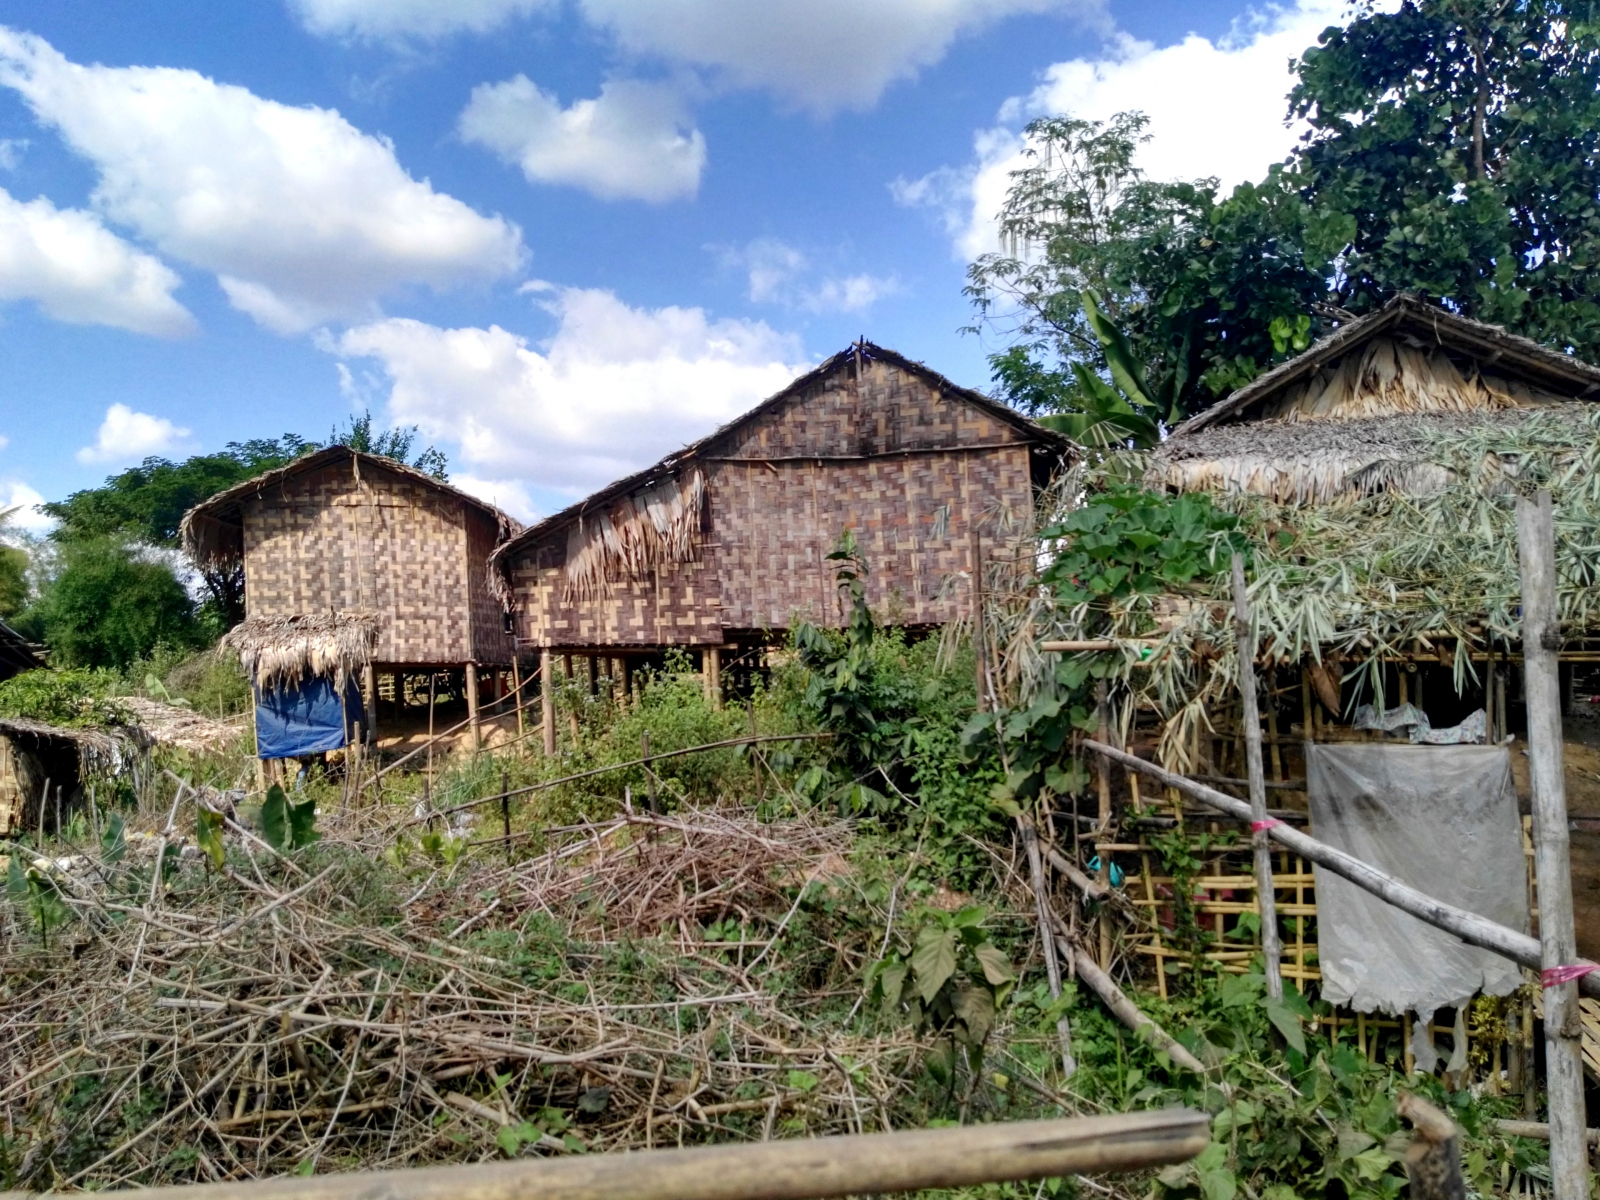 Prosté příbytky místních, Bago, Myanmar